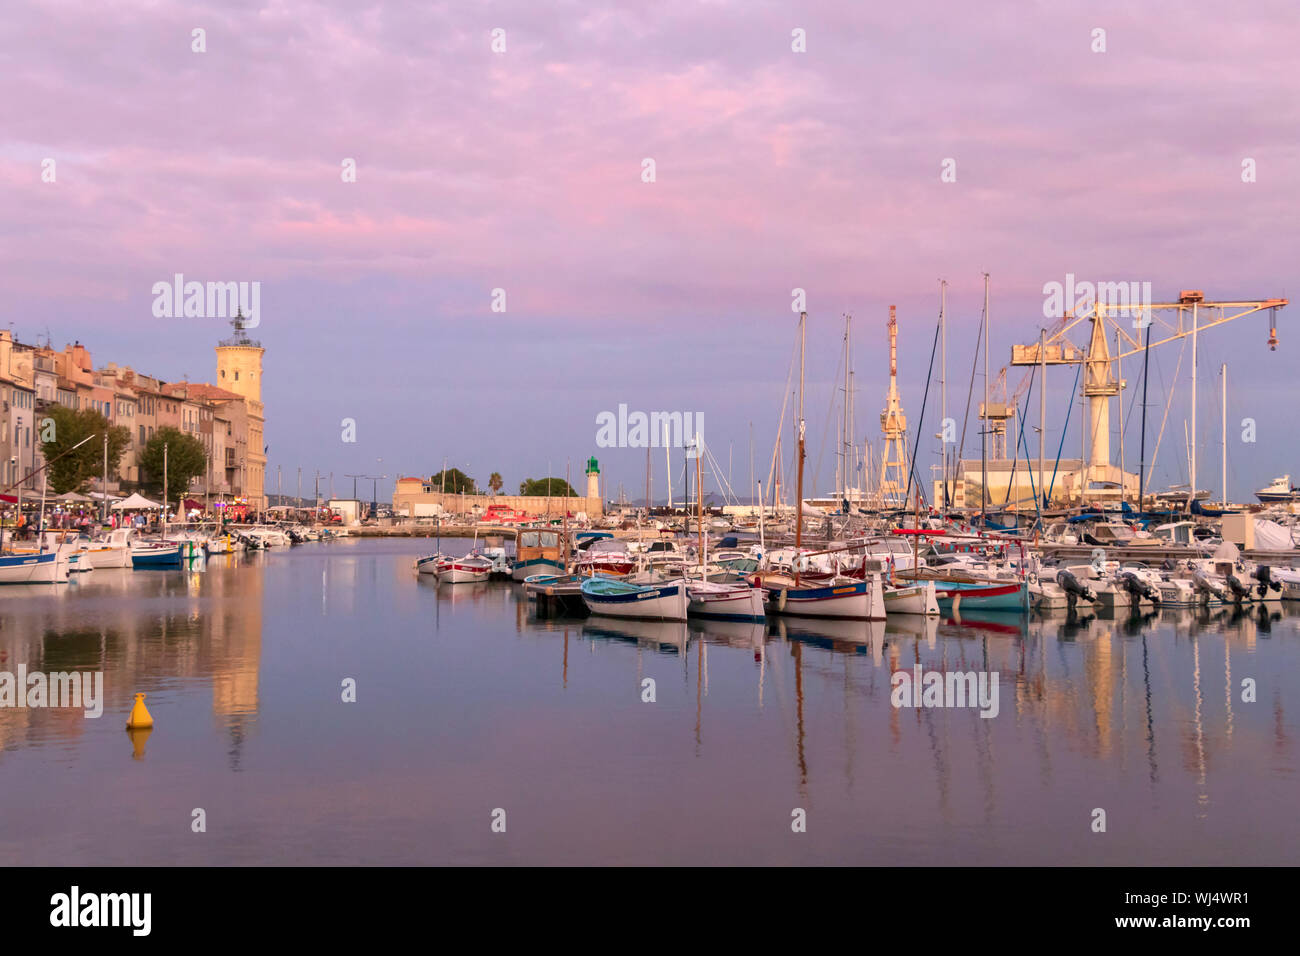 La Ciotat, Frankreich: Die Reihe der günstig chartern Yachtcharter in Alten Hafen der Marina der malerischen Stadt an der Mittelmeerküste bei pink Sonnenuntergang Abend Stockfoto